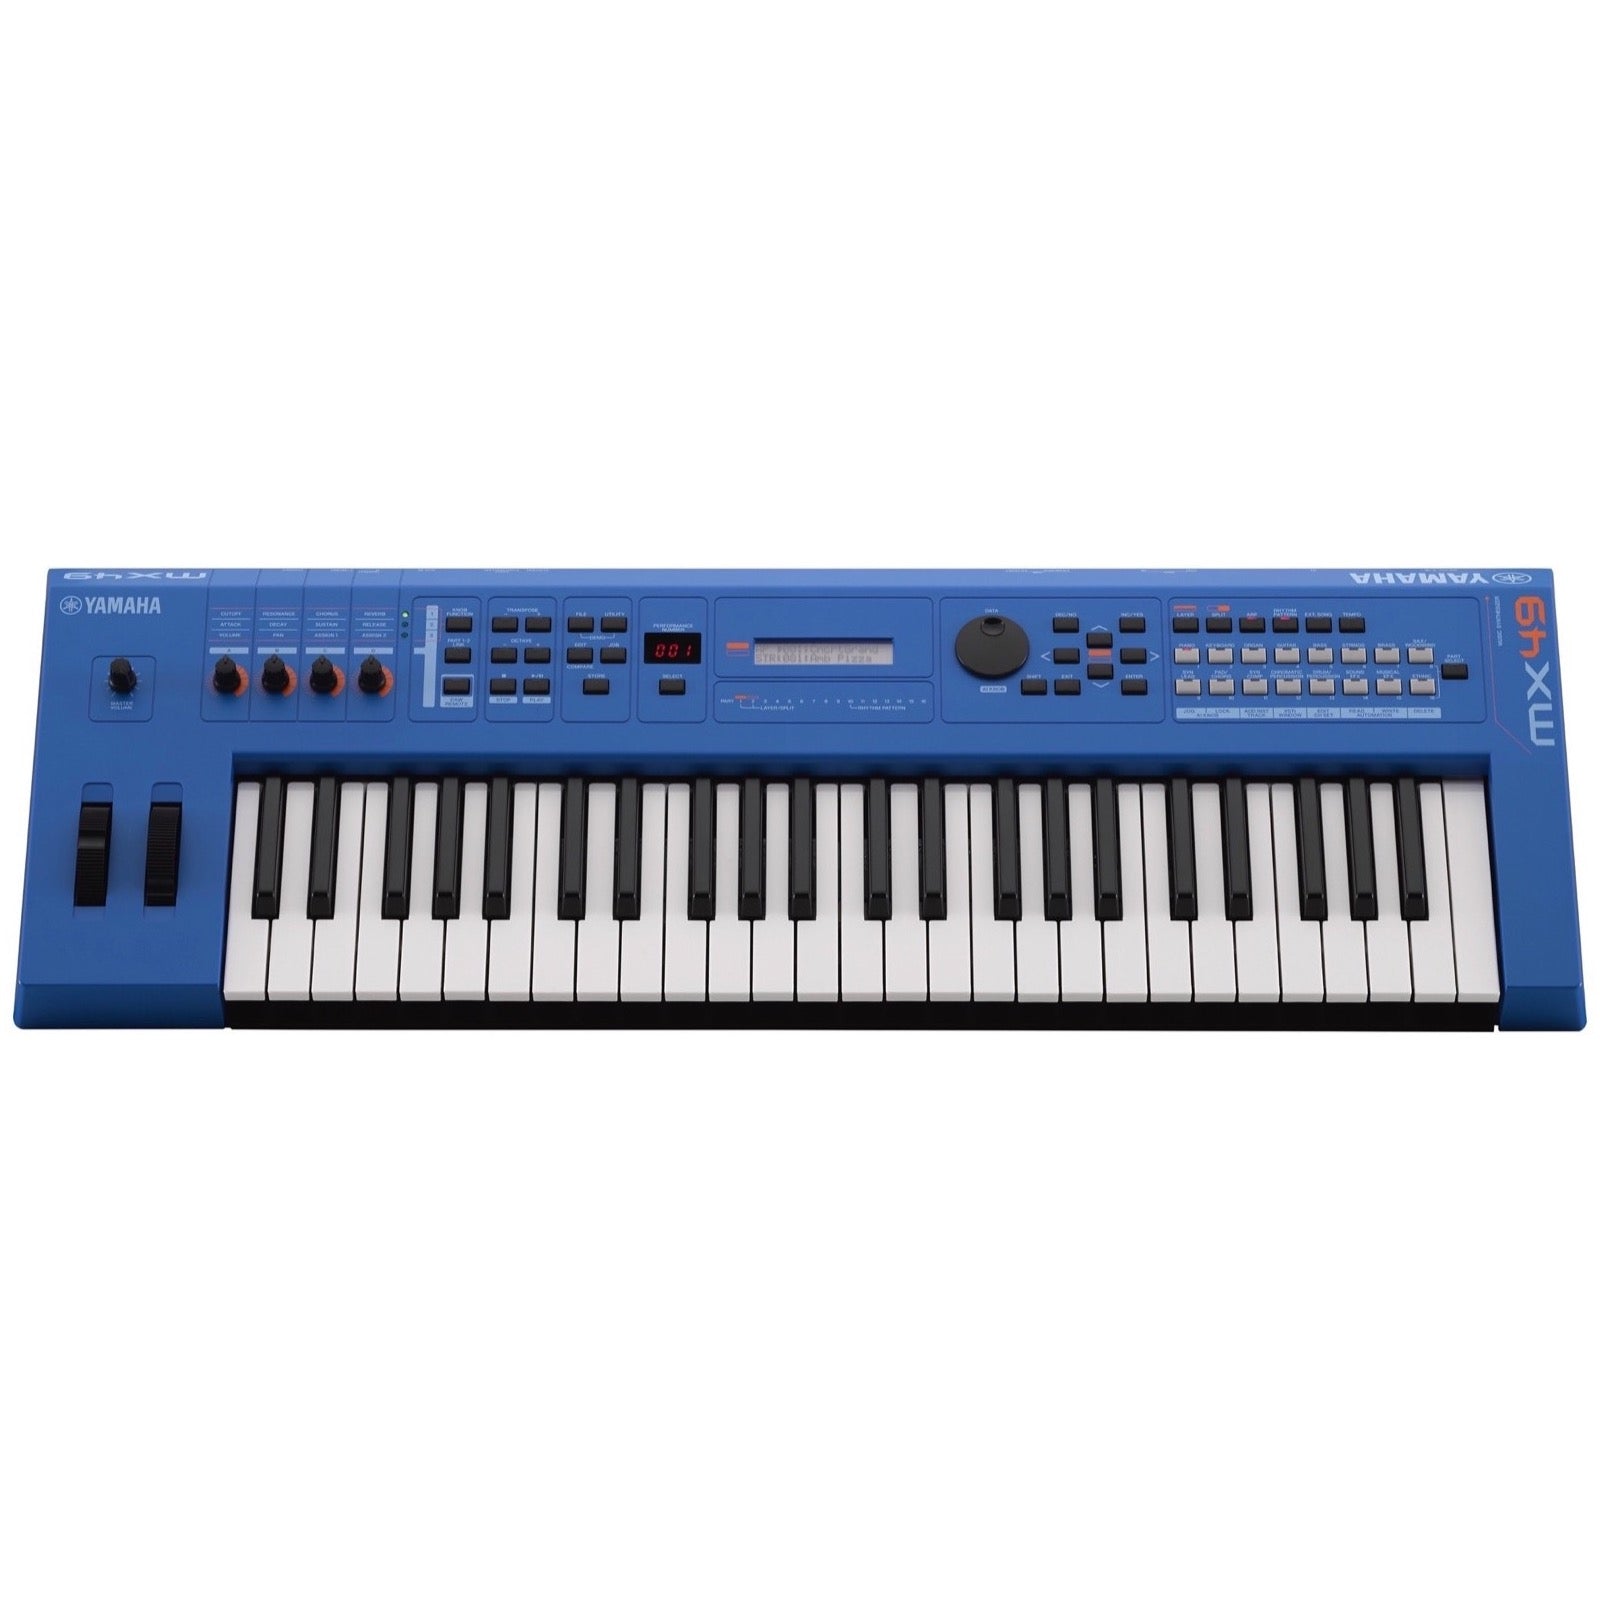 Yamaha MX49 v2 Keyboard Synthesizer, 49-Key, Blue – Same Day Music